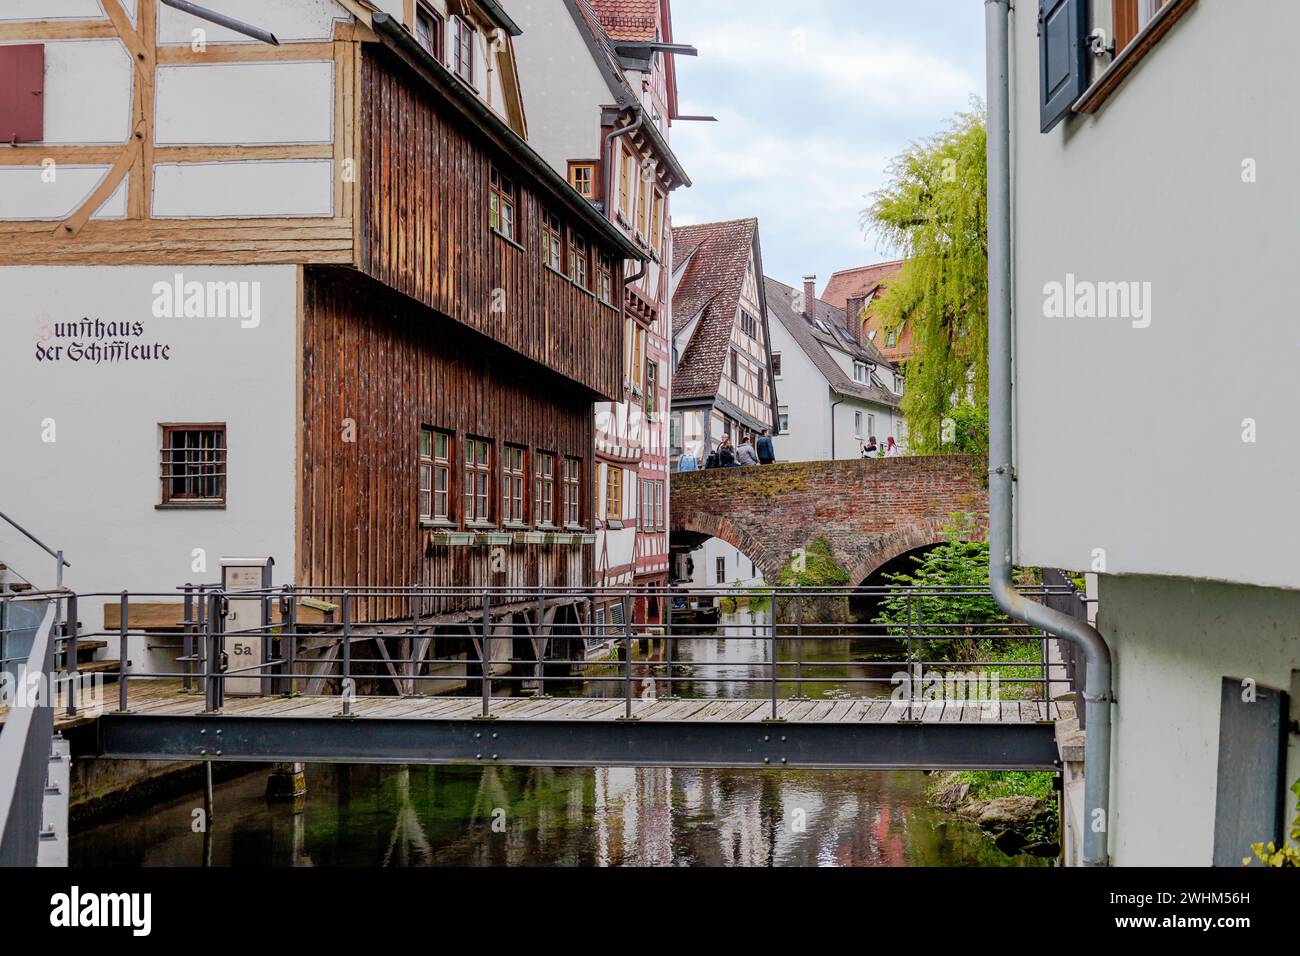 Quartiere dei pescatori di Ulm, casa delle corporazioni e ponti sul fiume Blau, Germania Foto Stock